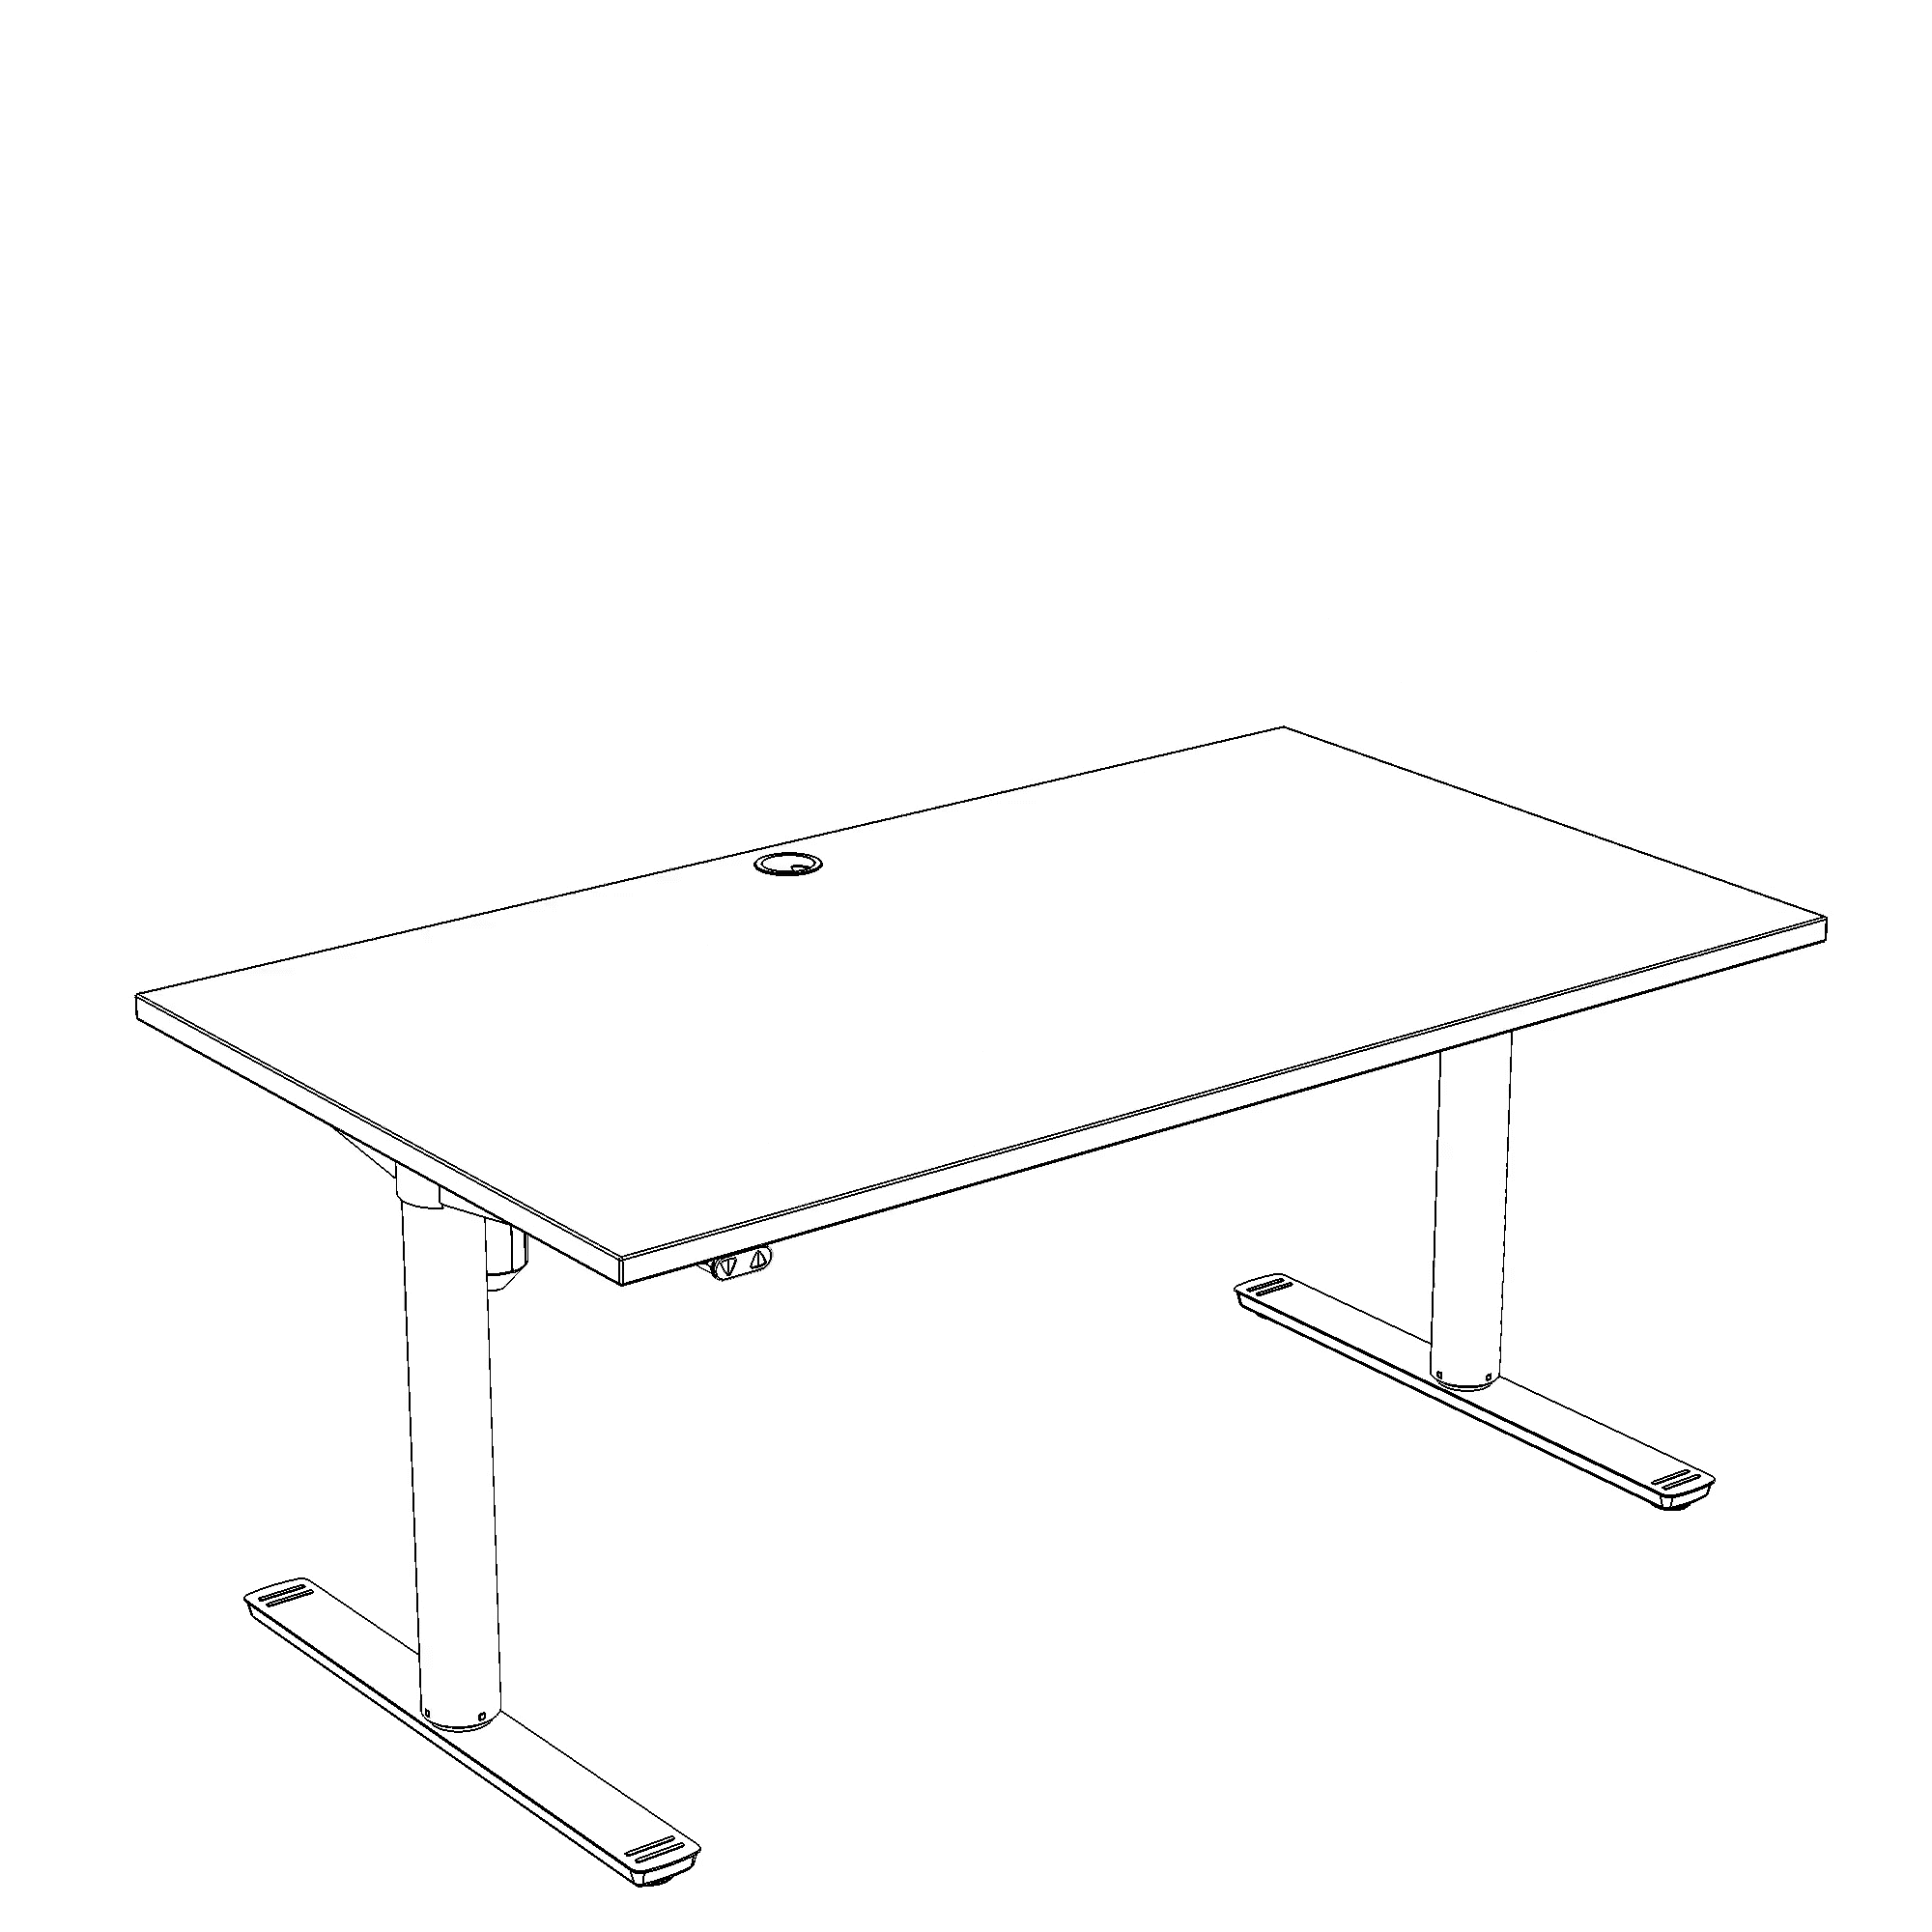 Elektrisch verstelbaar bureau | 140x80 cm | Beuken met wit frame